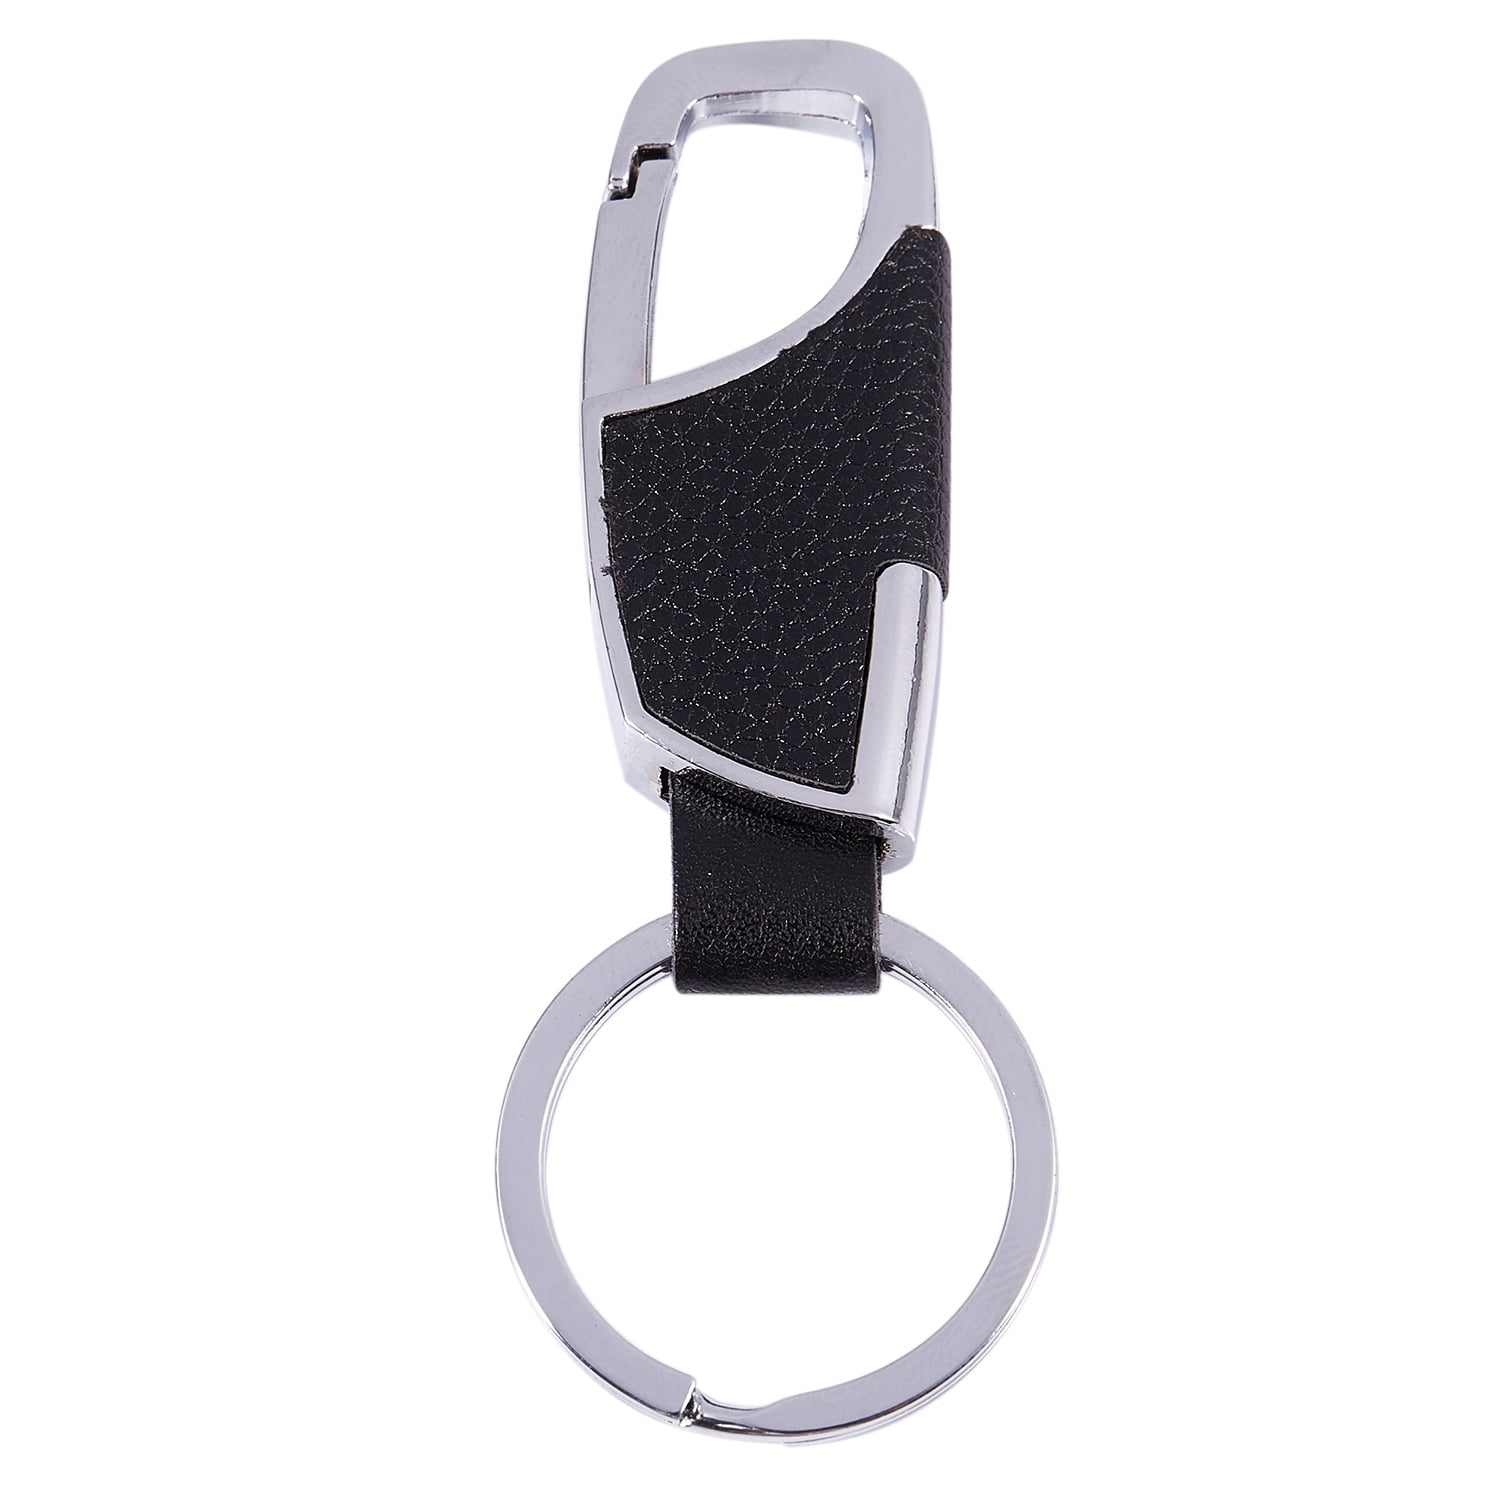 1x Fashion Cool Alloy Metal Keyfob Car Keyring Keychain Key Chain Ring Gifts 